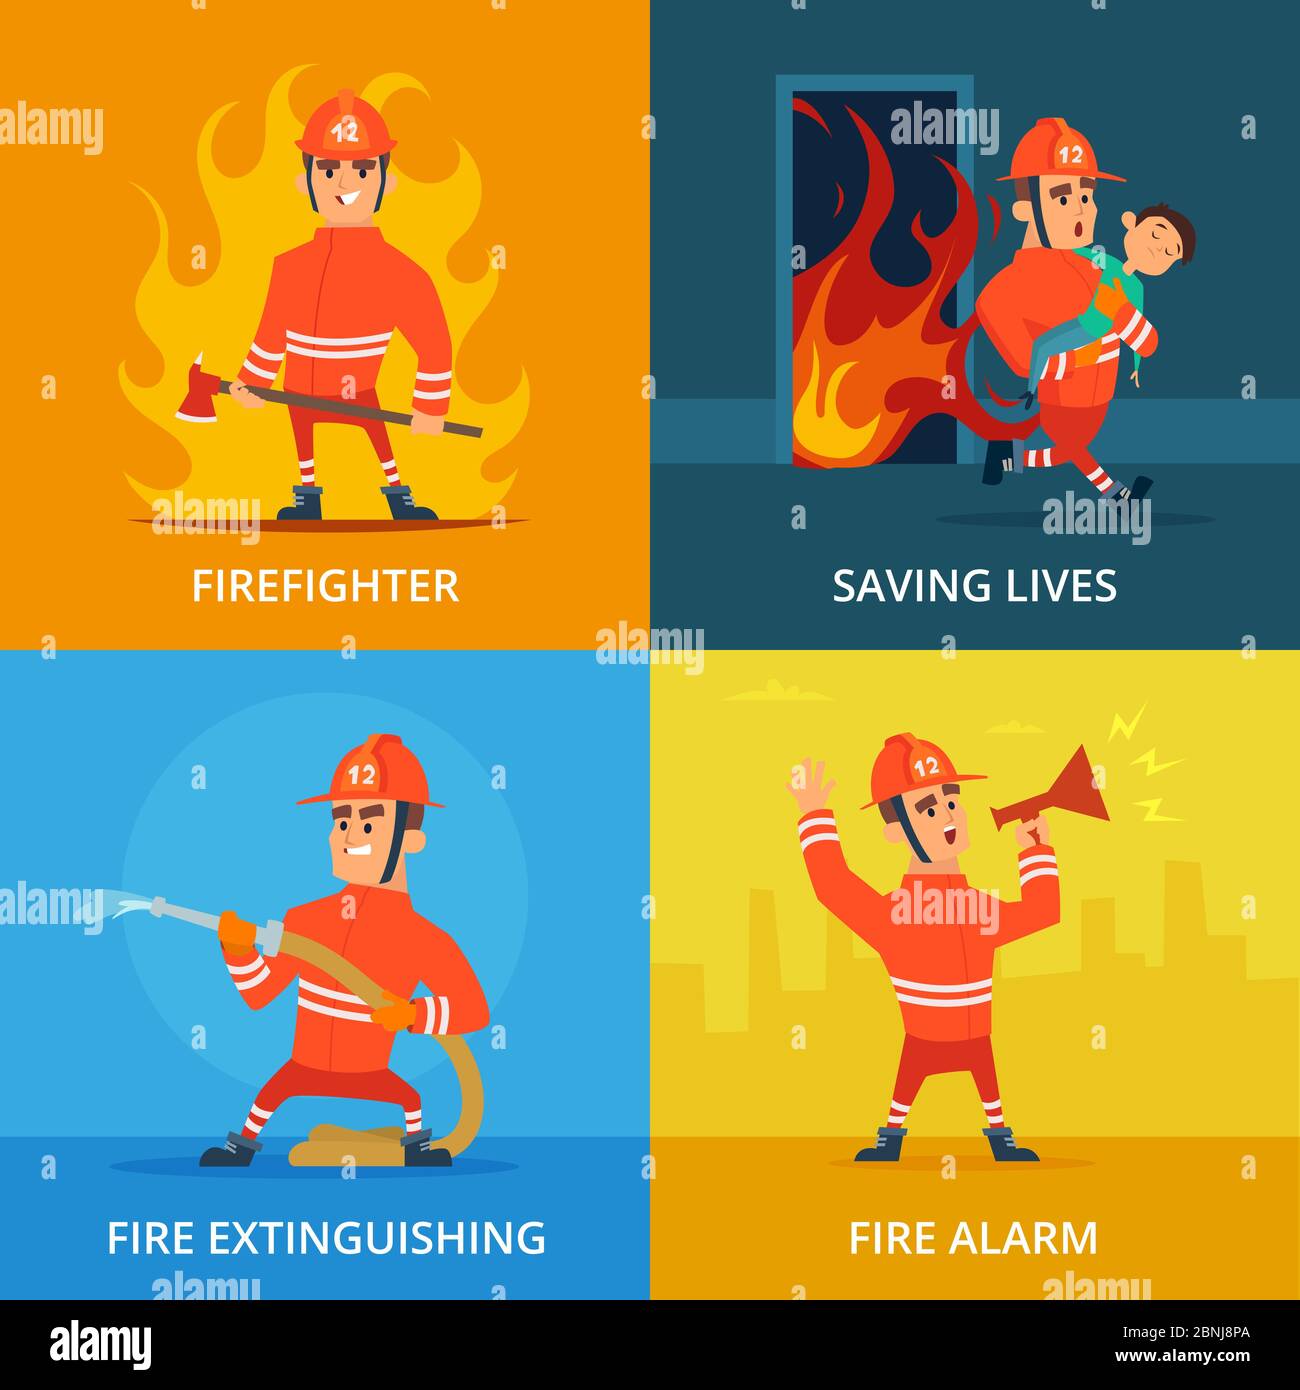 Images conceptuelles de pompier et d'équipement de travail Illustration de Vecteur